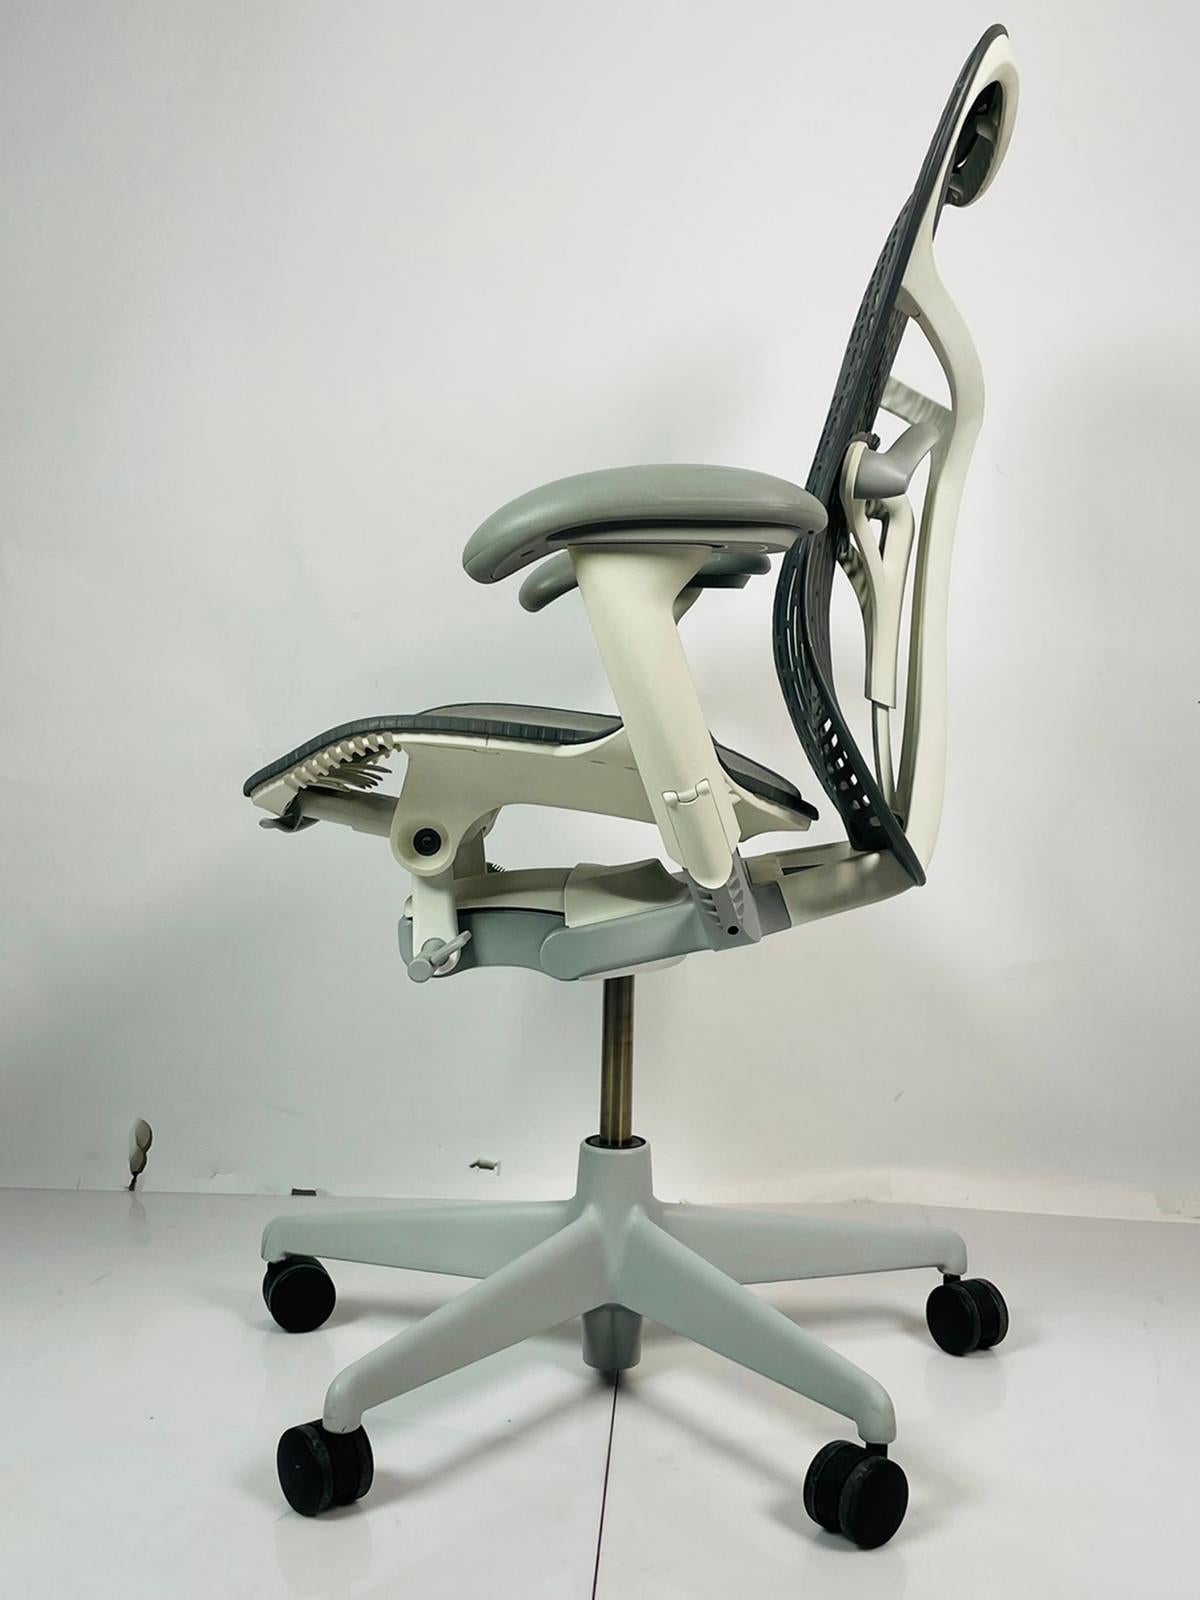 Voici la chaise de bureau Mirra 2 de Studio 7.5 pour Herman Miller, l'alliance parfaite du confort, du style et de la fonctionnalité. Fabriquée aux États-Unis en 2015, cette chaise de bureau grise est indispensable à tout espace de travail moderne.